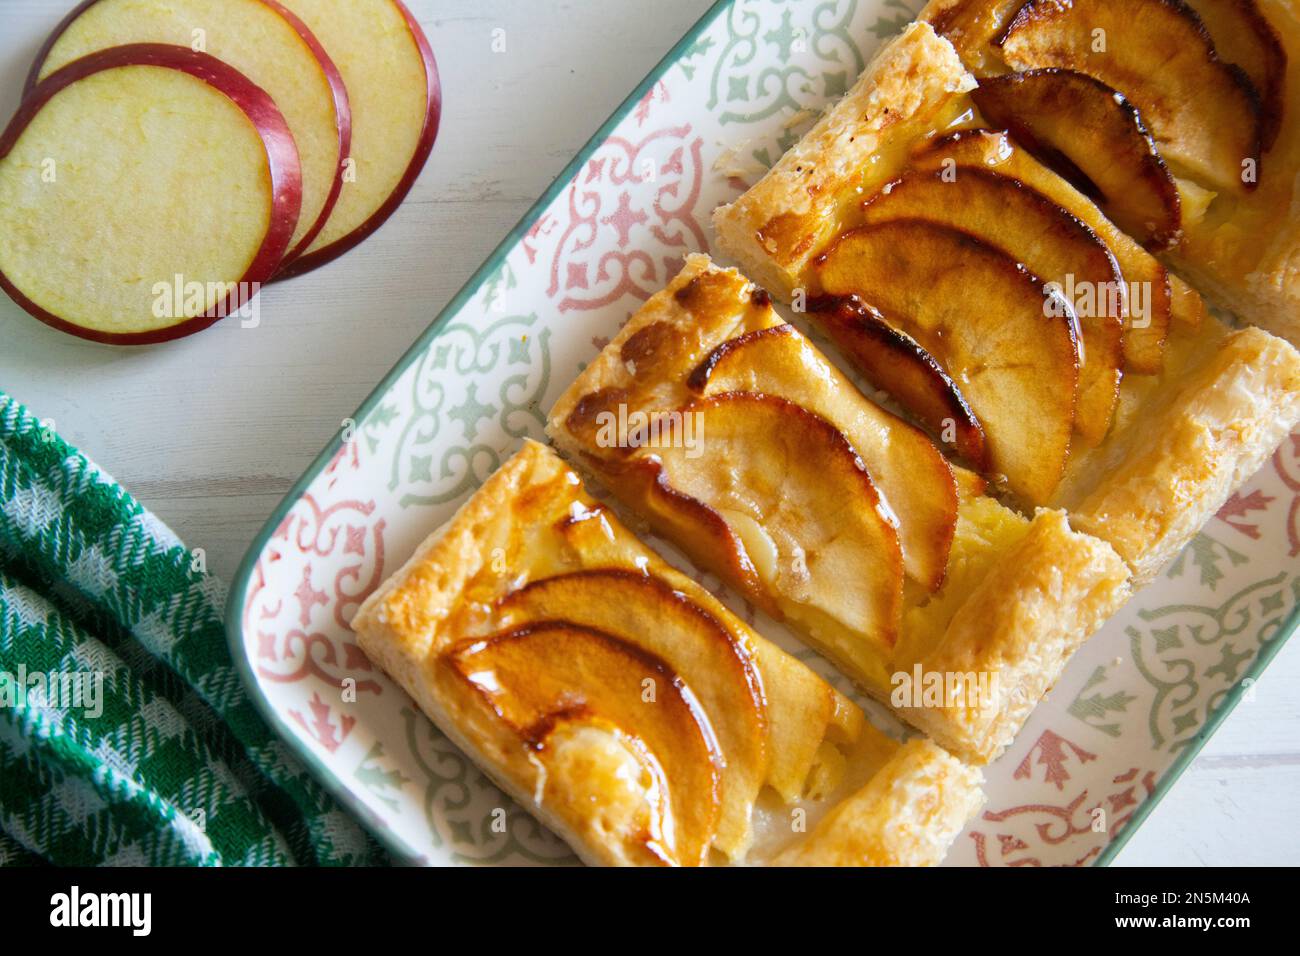 Délicieux dessert français préparé avec une pâte feuilletée remplie de pomme Banque D'Images